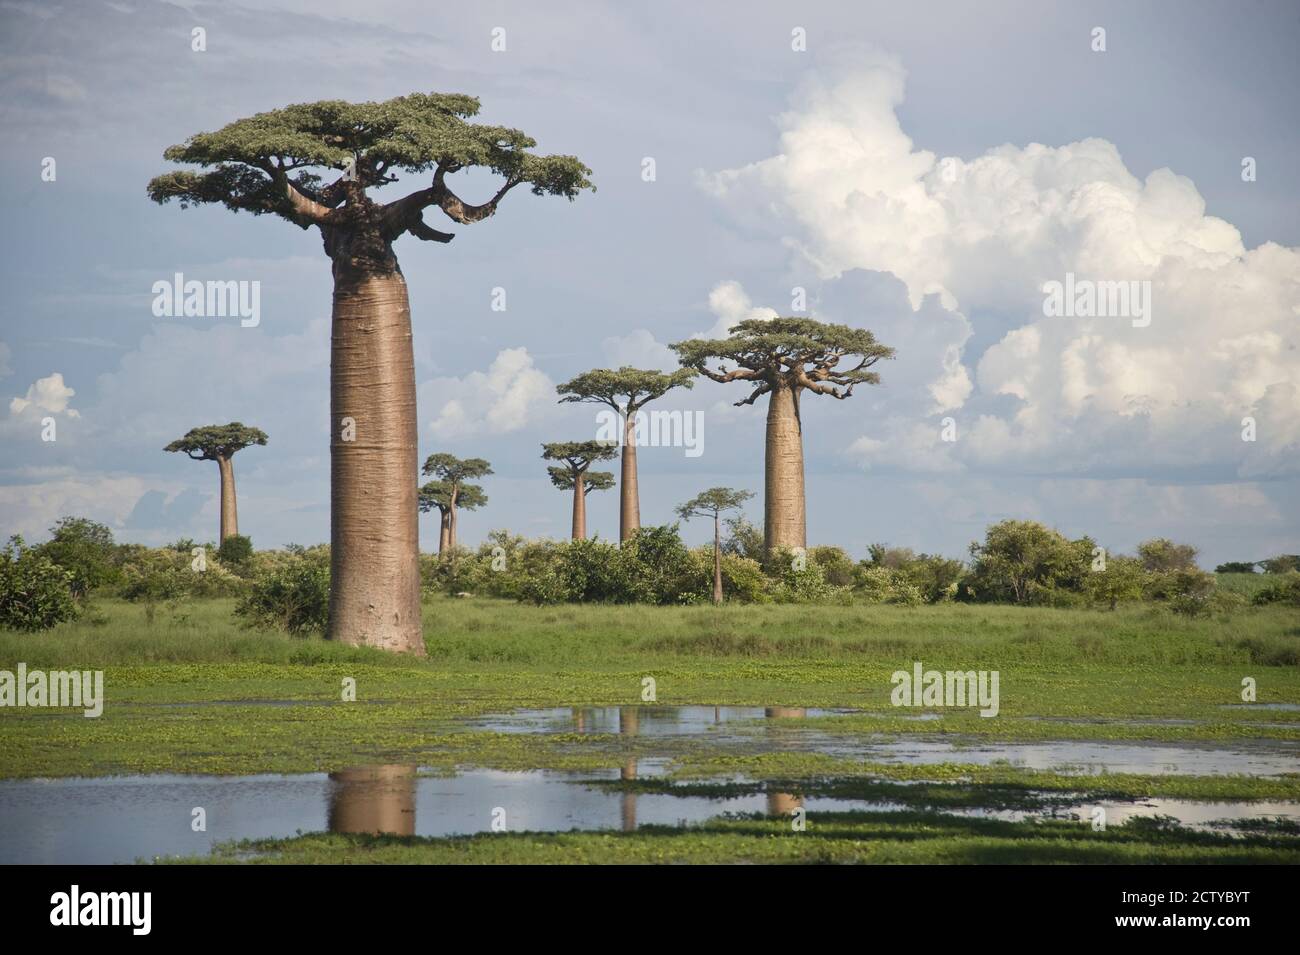 Árboles Baobab (Adansonia digitata) en la Avenida de los Baobabs, Morondava, Madagascar Foto de stock